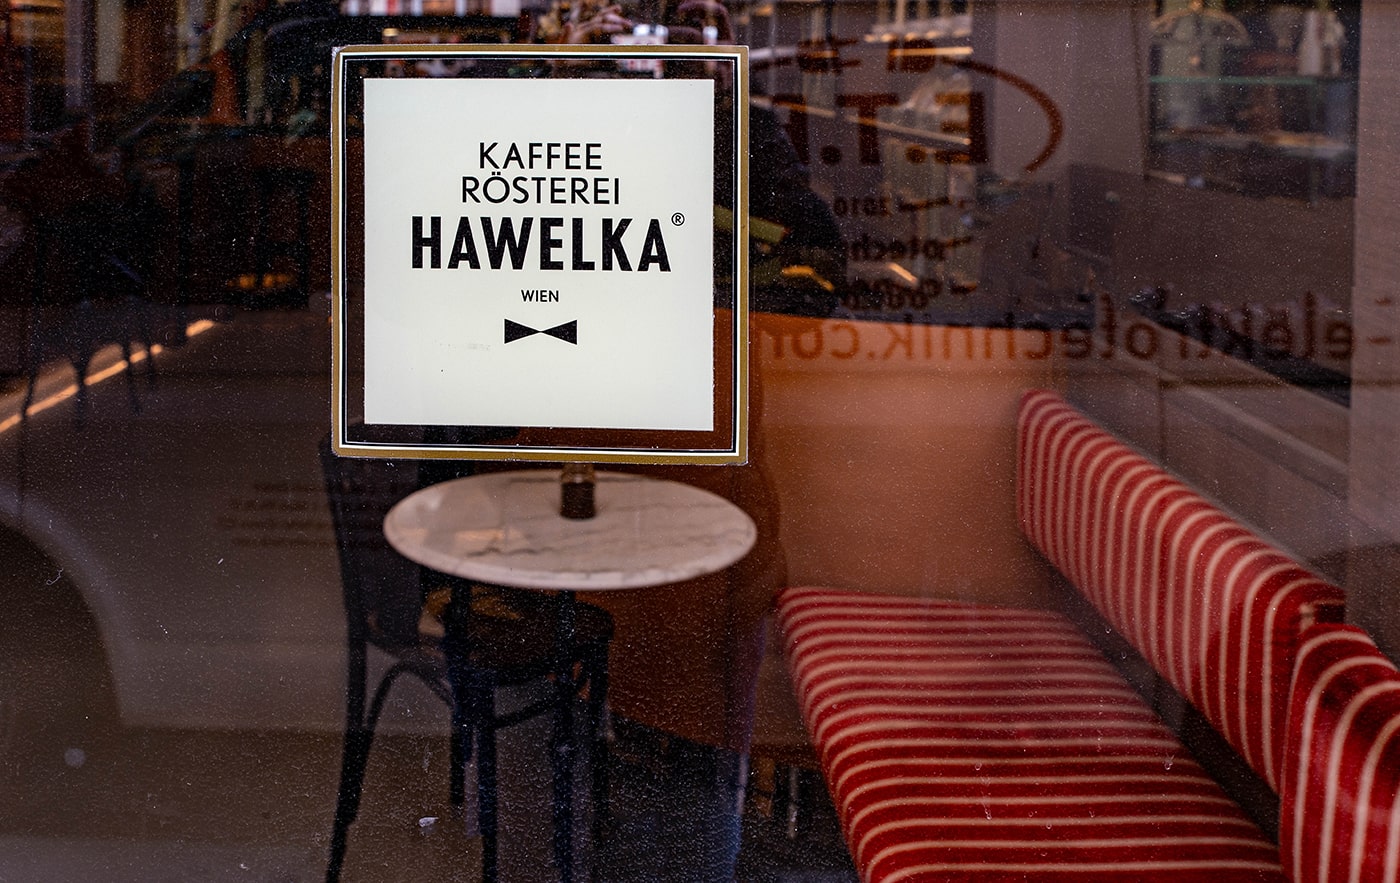 Kaffeetasting Wiener Melange im Rösterei-Shop Hawelka - Schaufensteransicht - www.wien-erleben.com